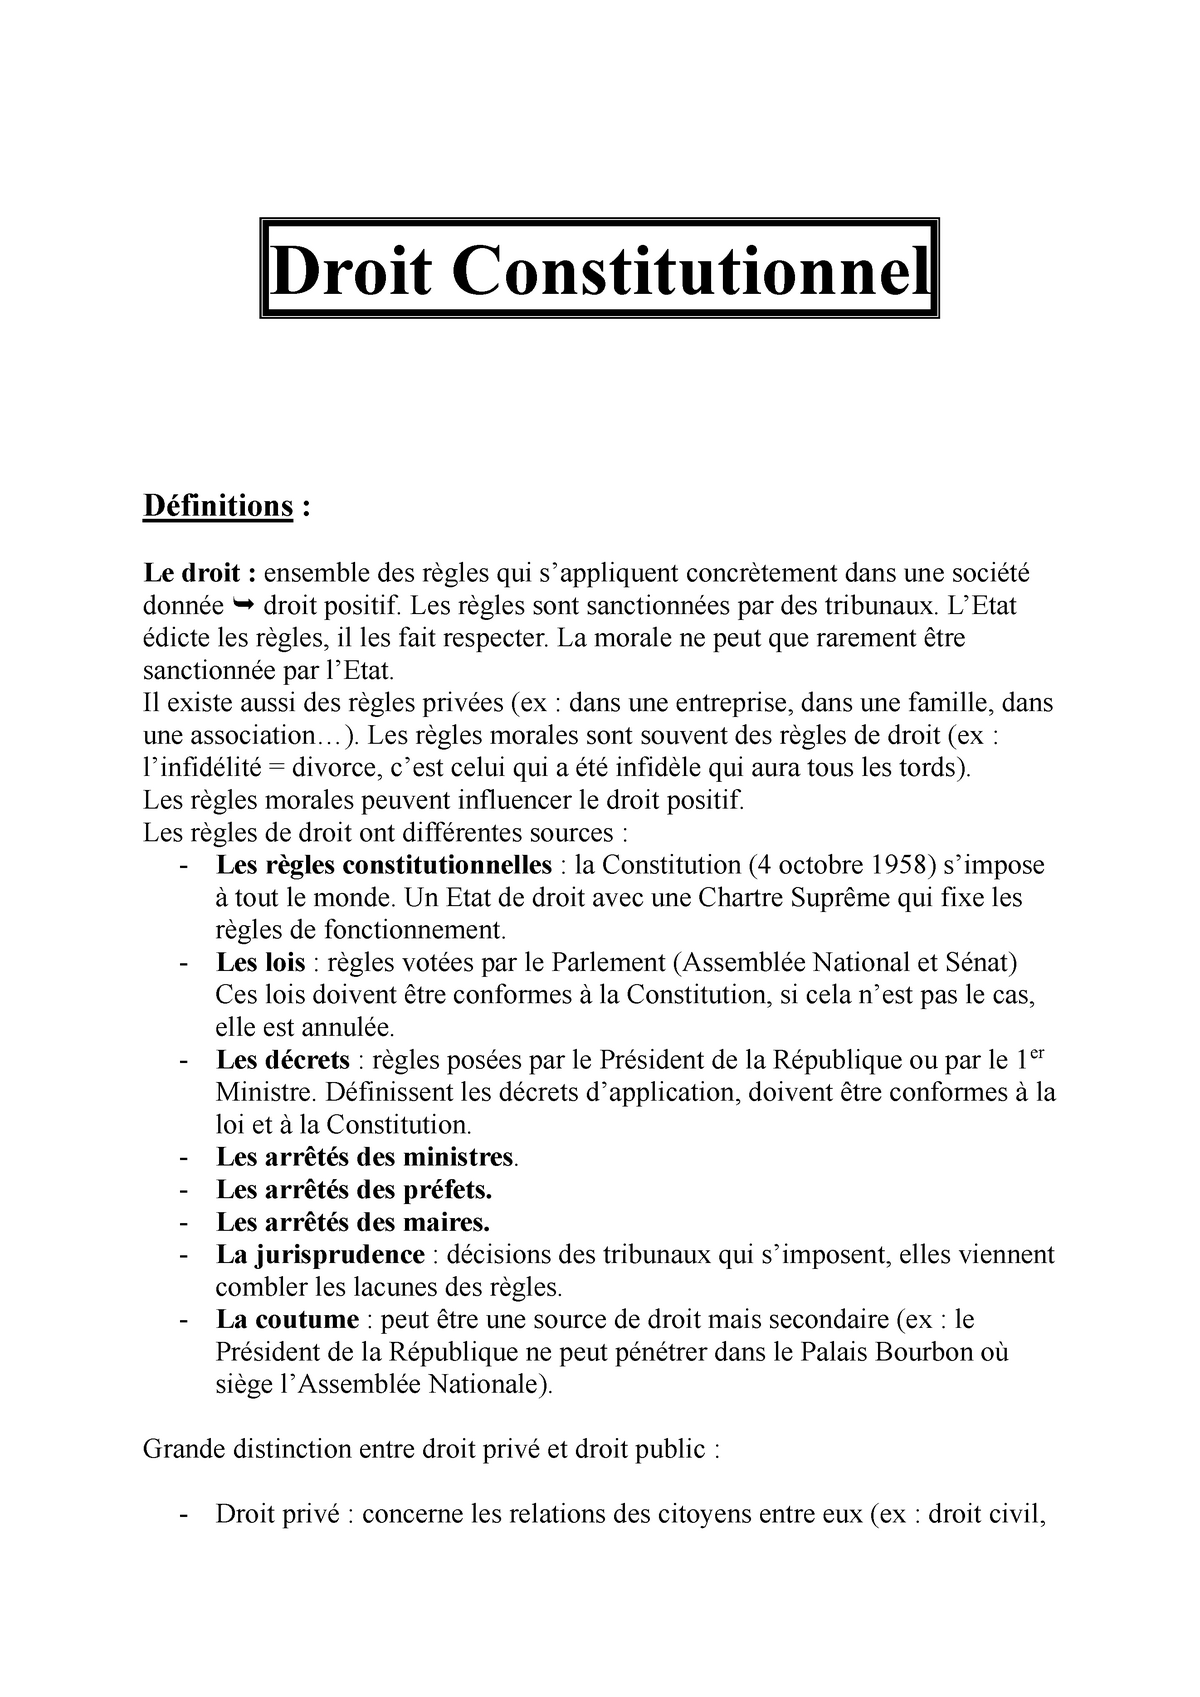 dissertation droit constitutionnel conseil constitutionnel